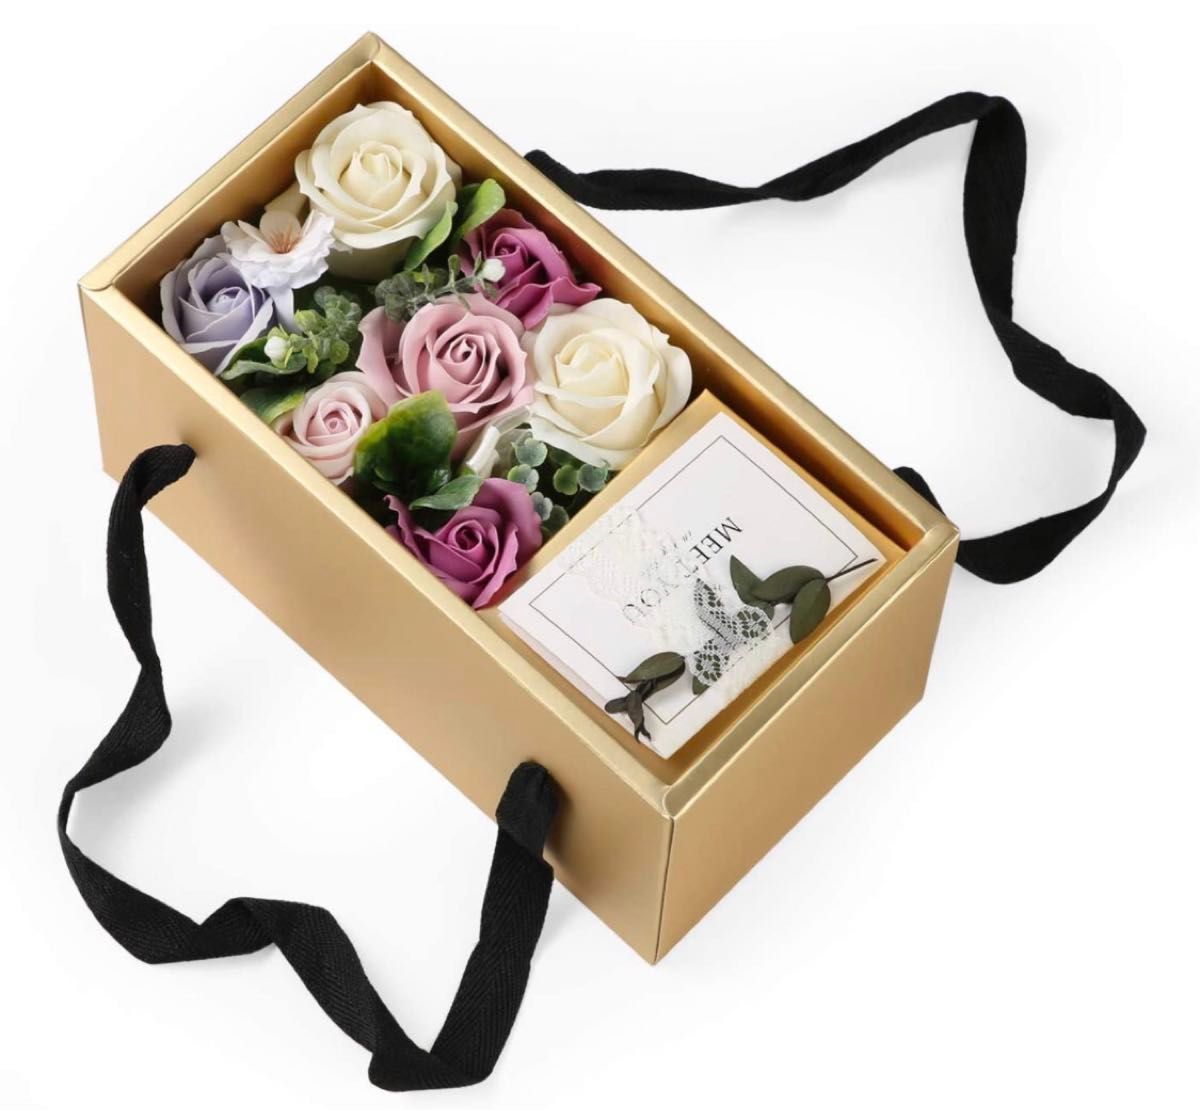 ソープフラワー ギフトボックス メッセージカード付 C枯れない花 造花 花束 プレゼント 誕生日 記念日(パープル-Boxタイプ)